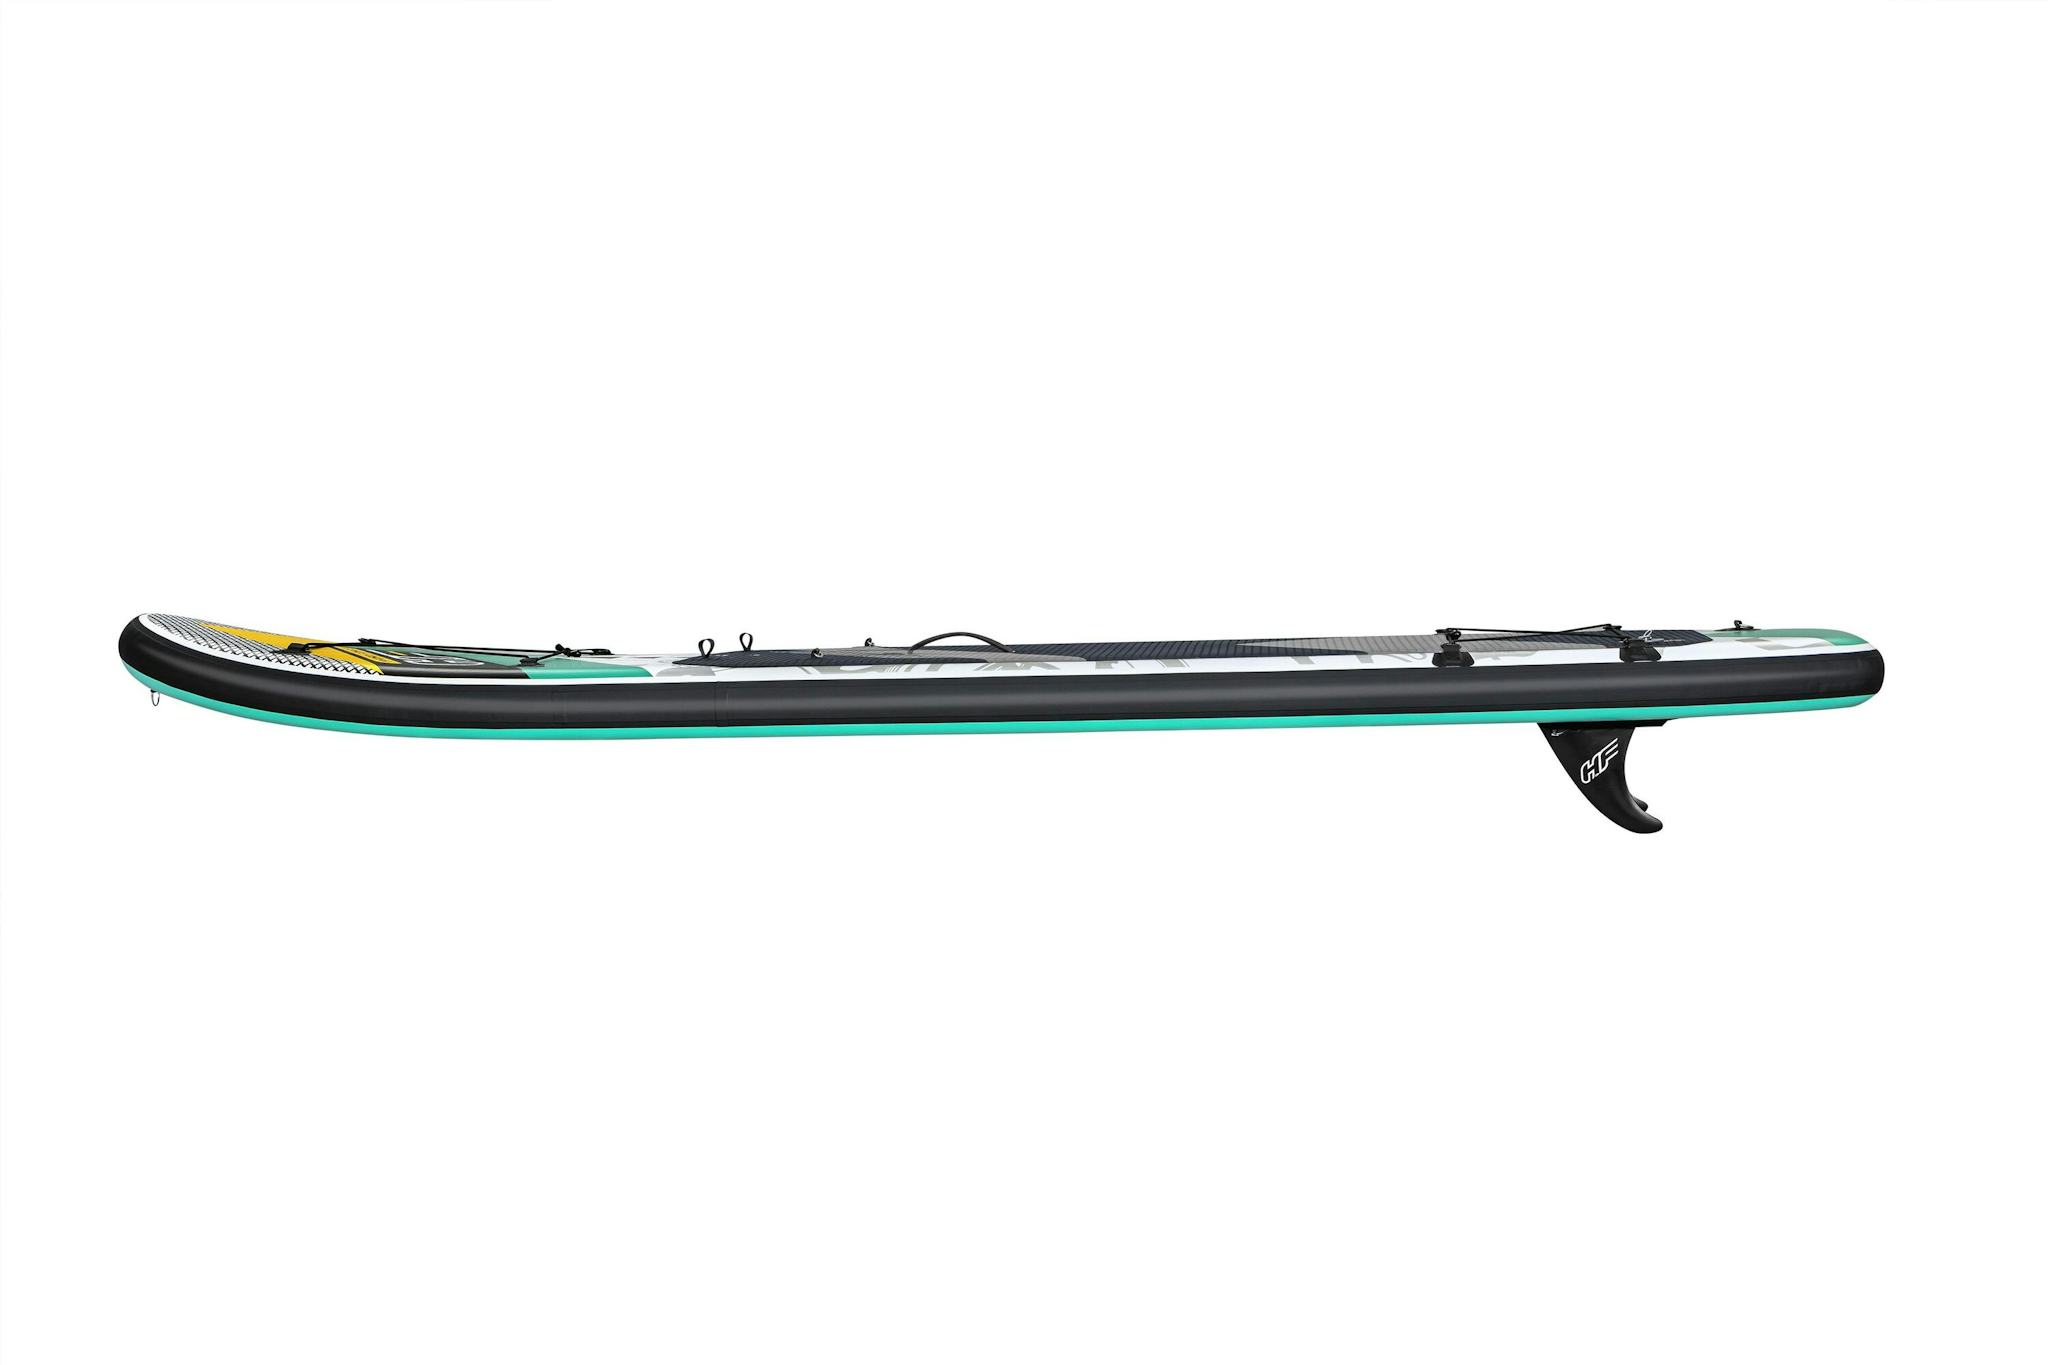 Sports d'eau Paddle SUP gonflable Hydro-Force™ Aqua Wander, 305 x 84 x 12 cm avec pagaie, leash, pompe, 2 ailerons et sac à dos de transport, siège détachable Bestway 5